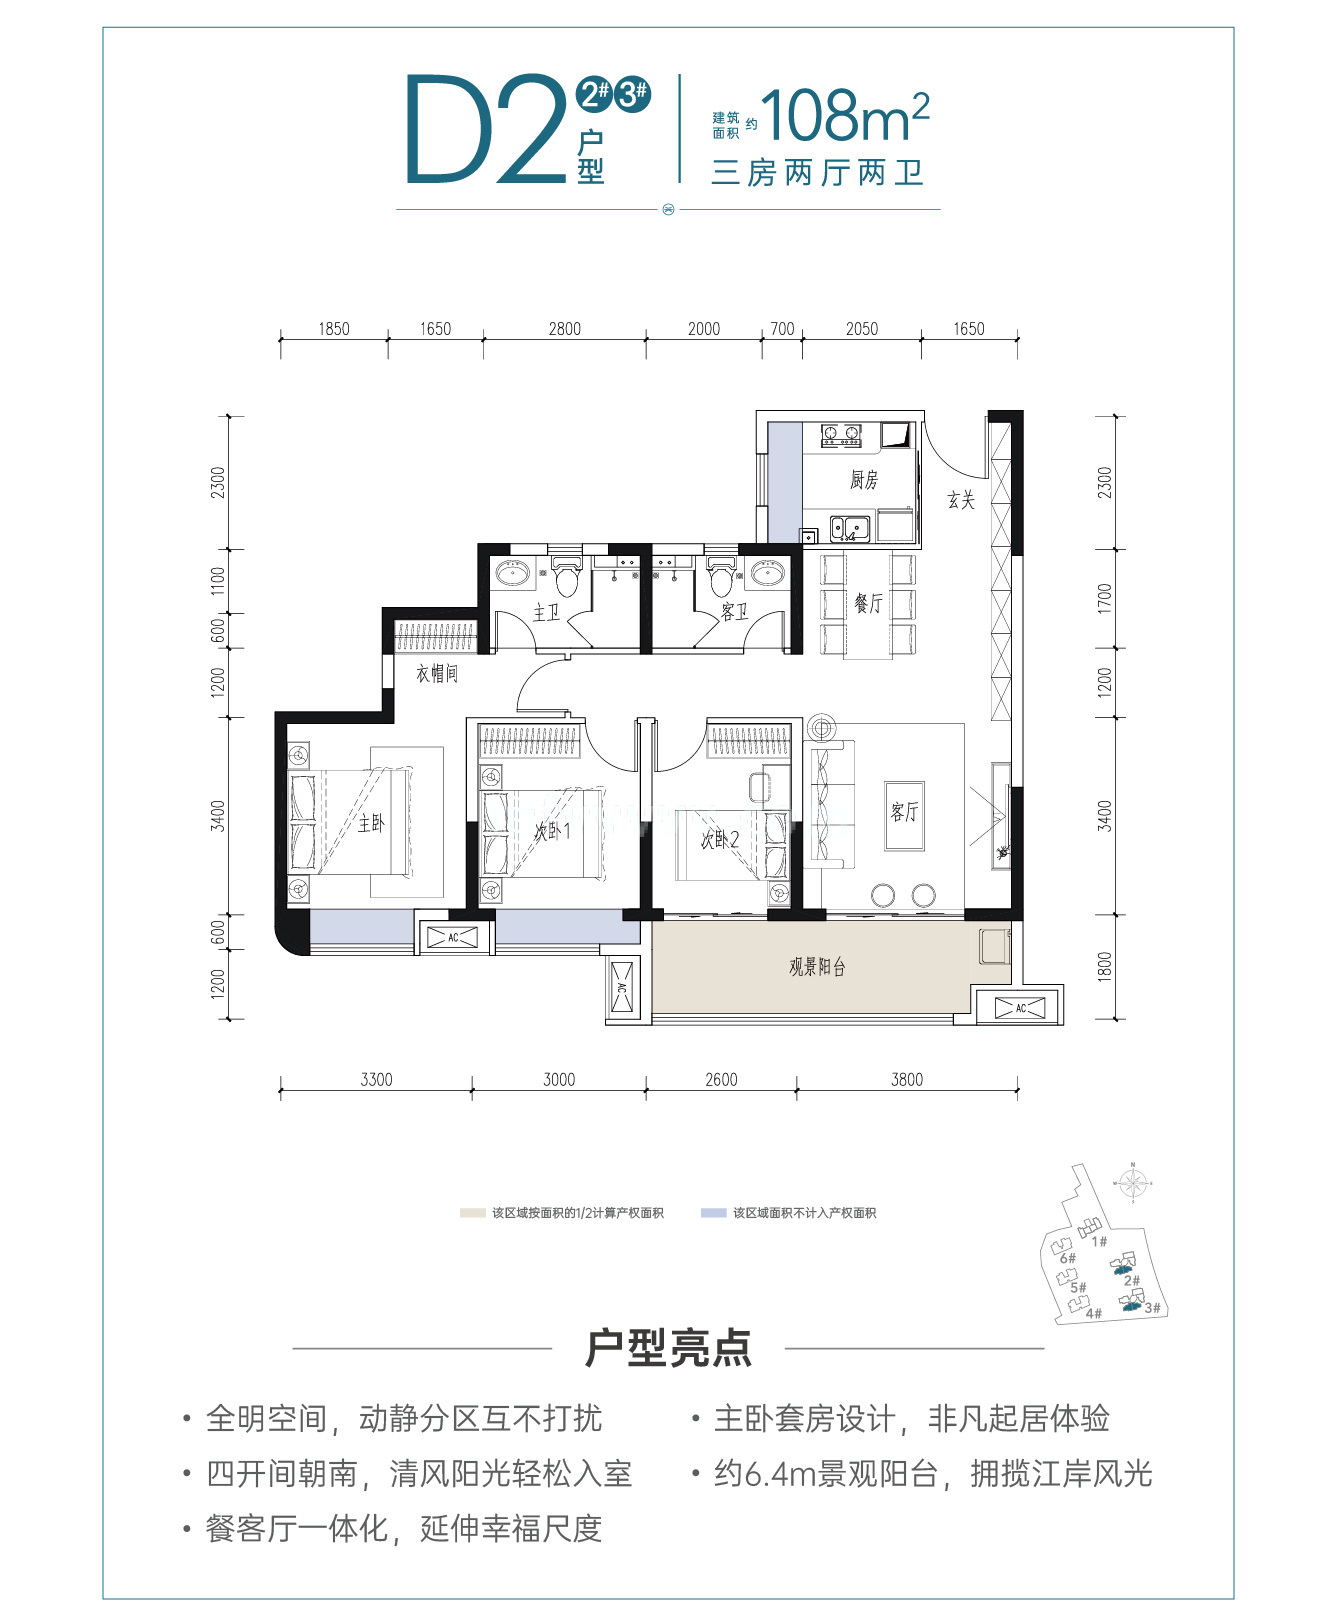 中国铁建·江语天著 高层 D2户型建筑面积108㎡3房2厅2卫